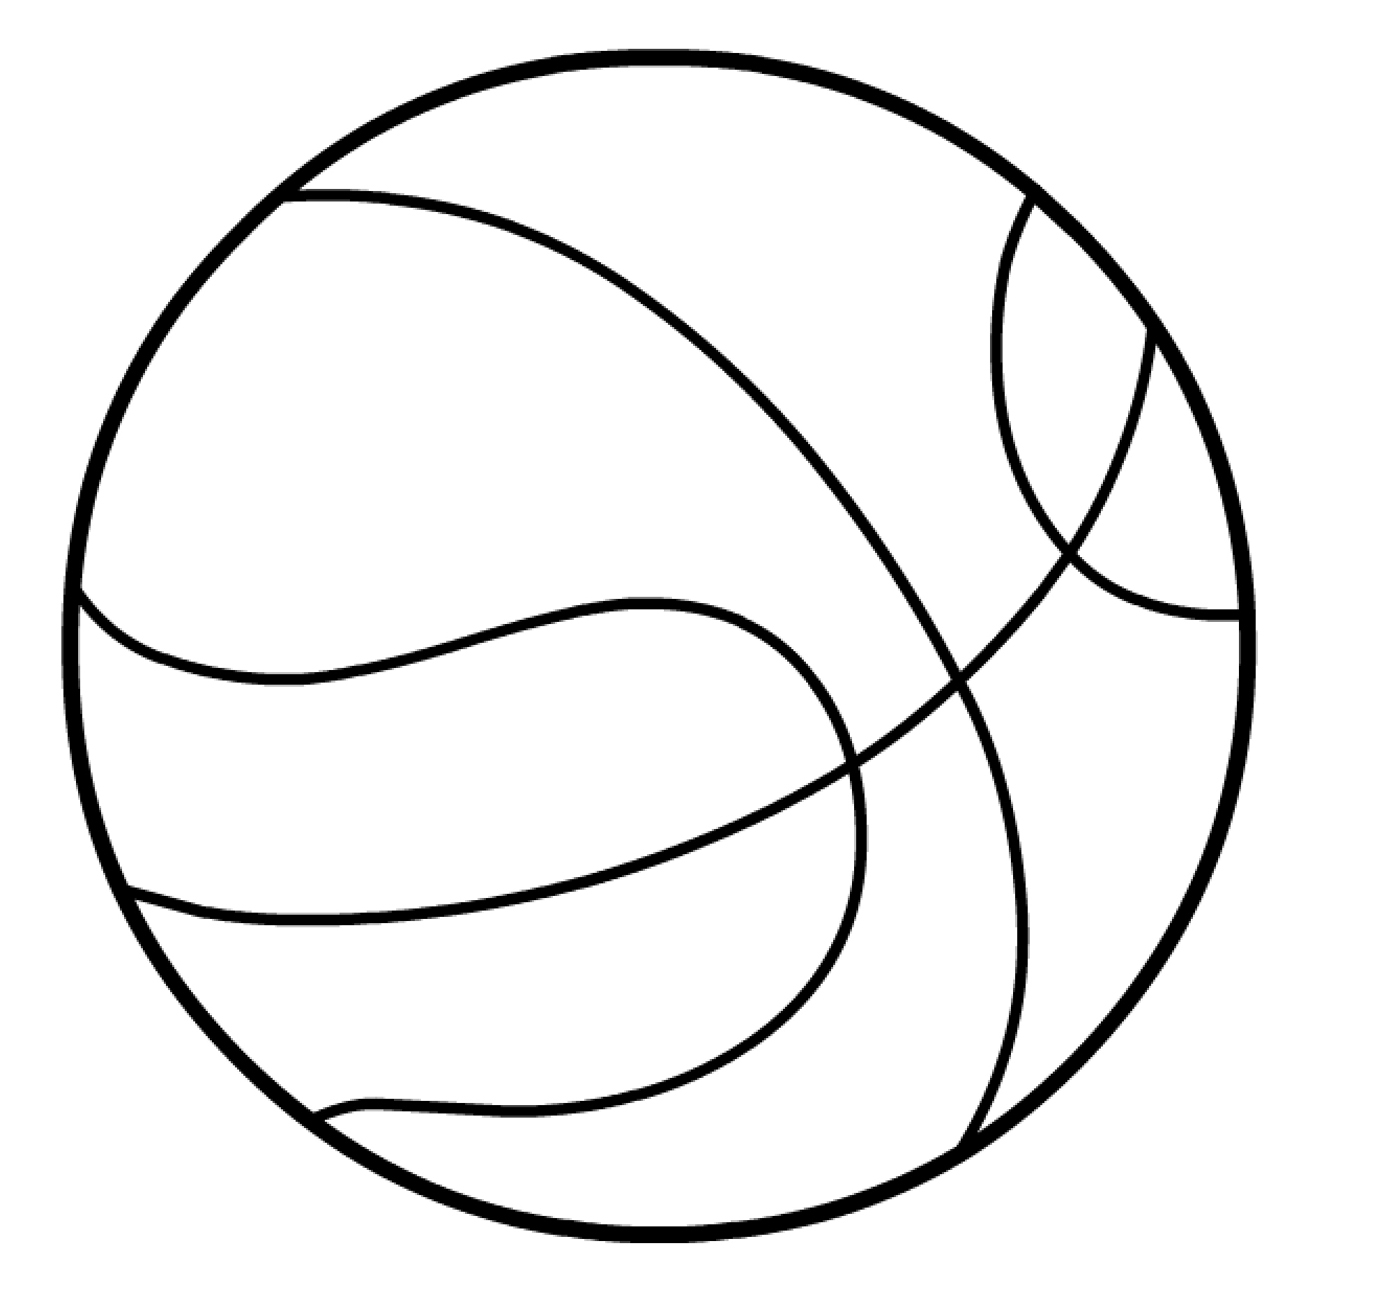 Раскраска баскетбольного мяча для мальчиков (баскетбол, мяч)